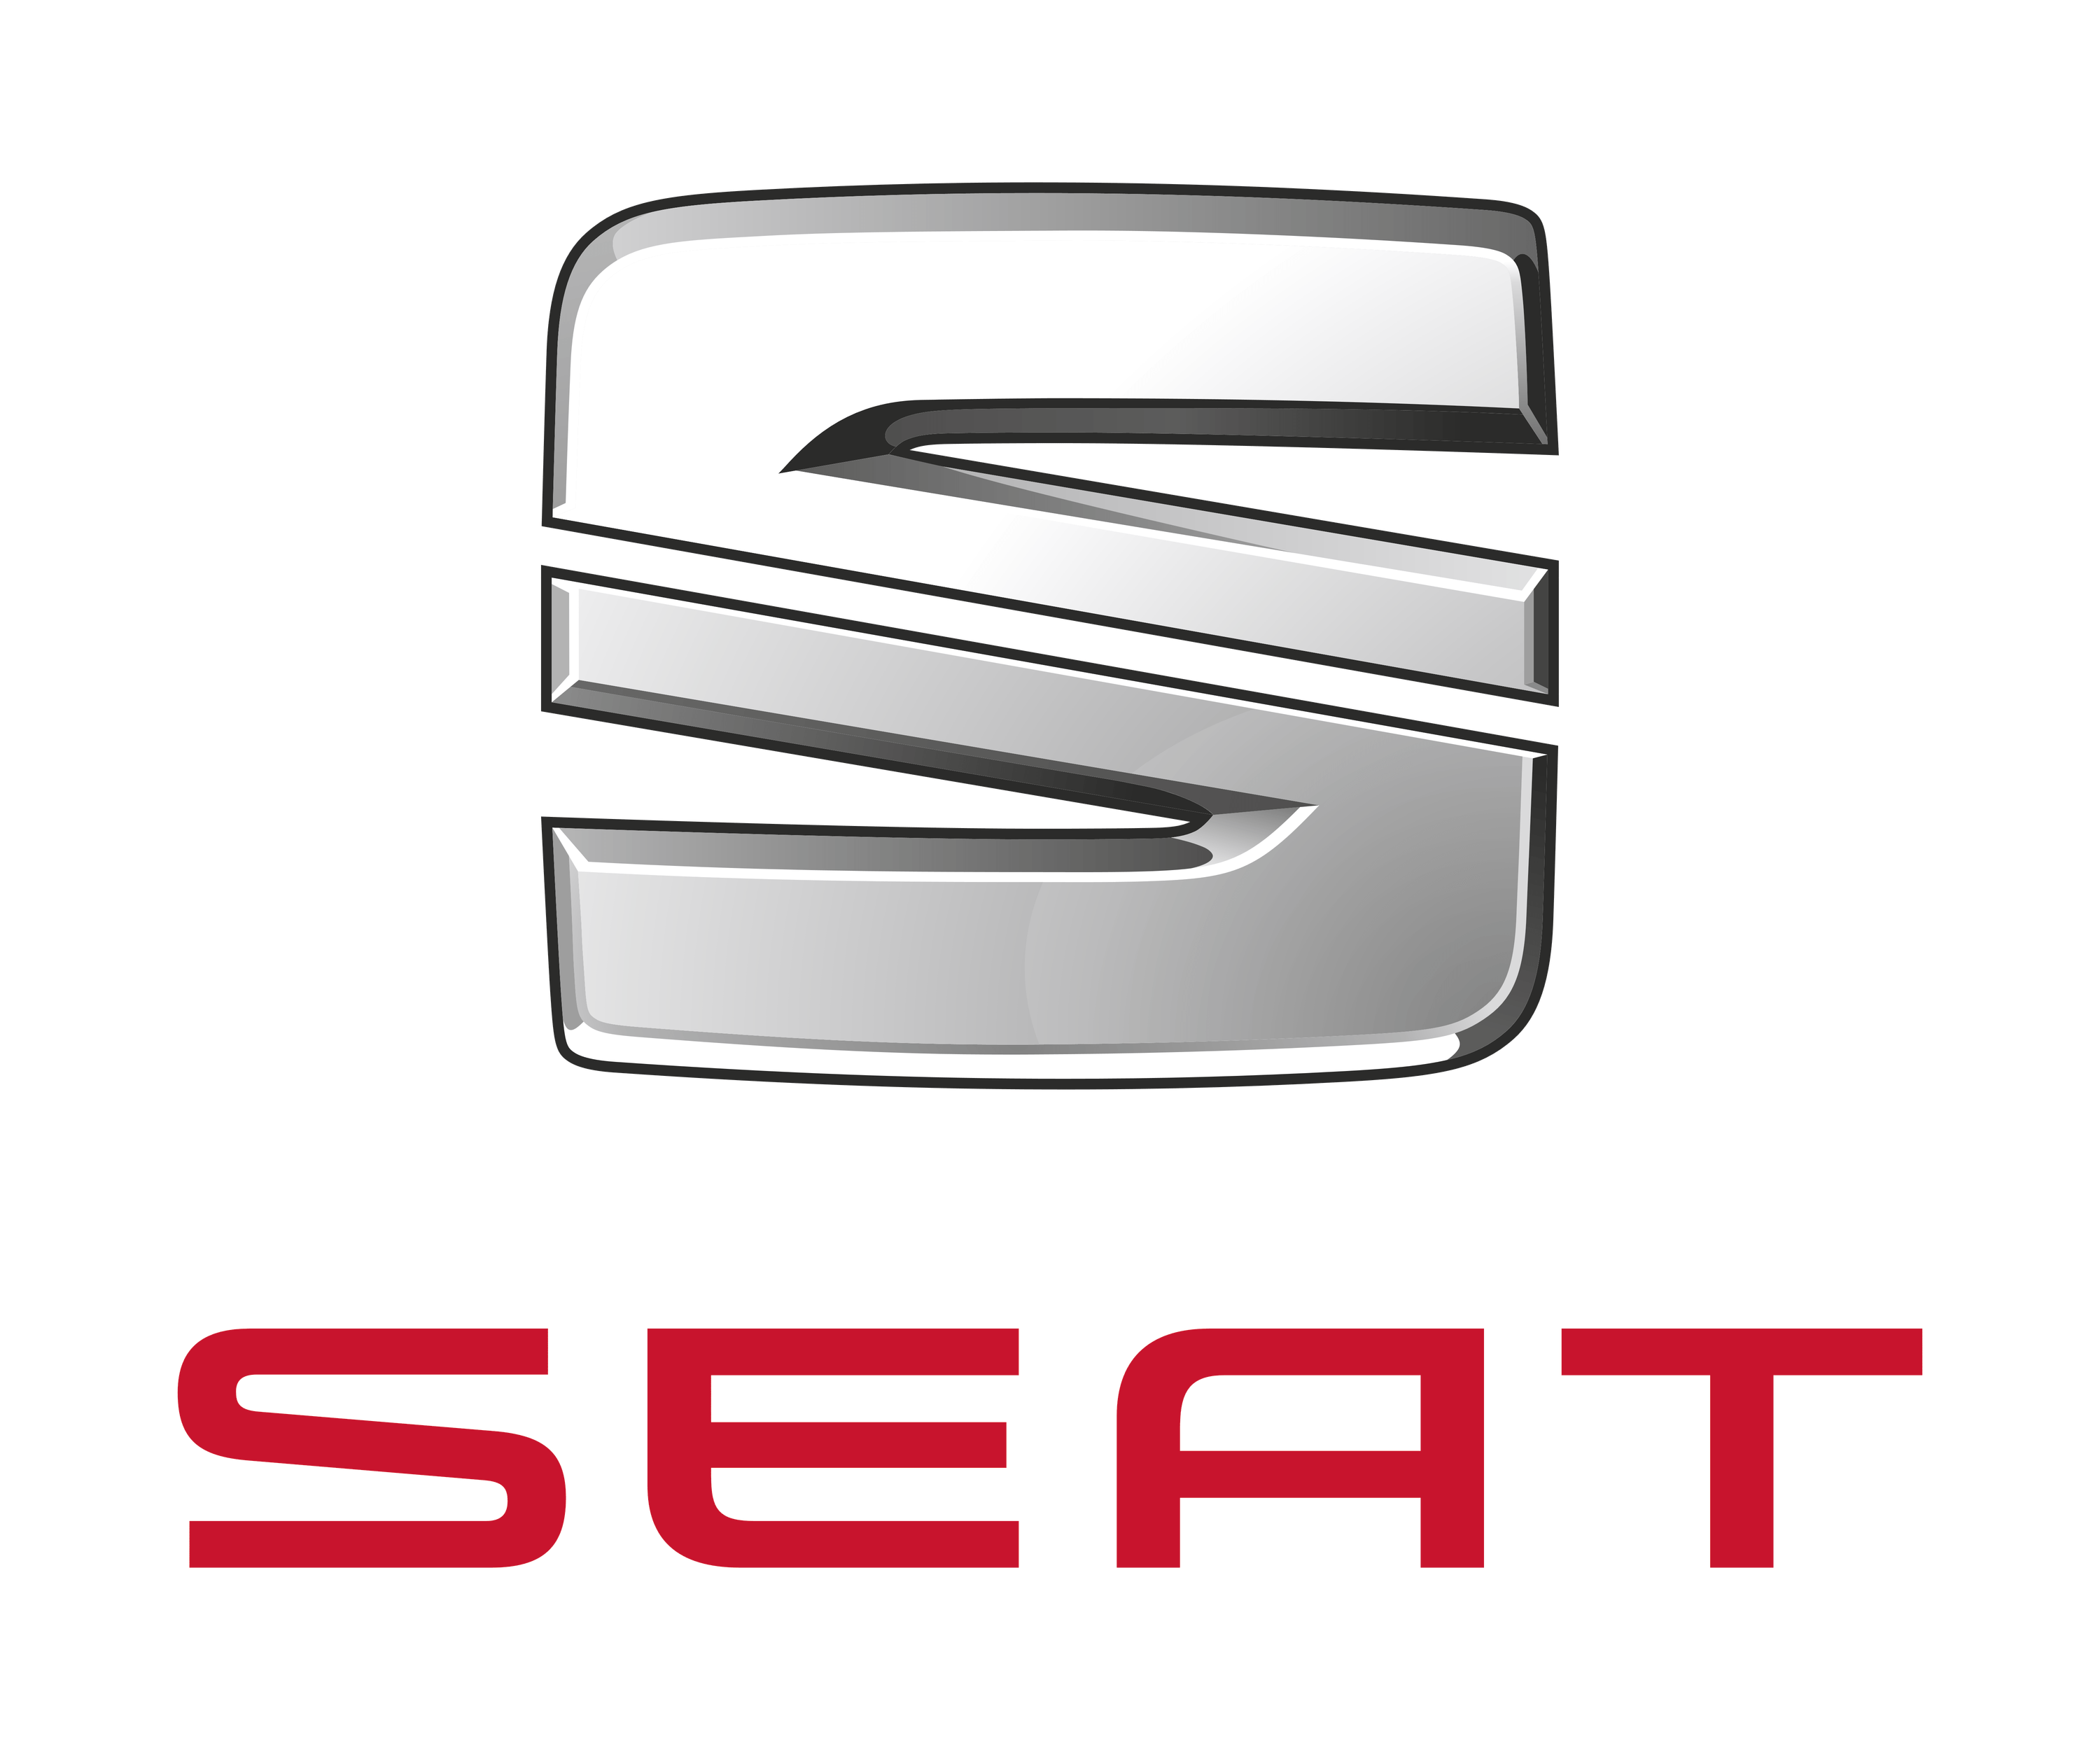 Seat – Logos Download